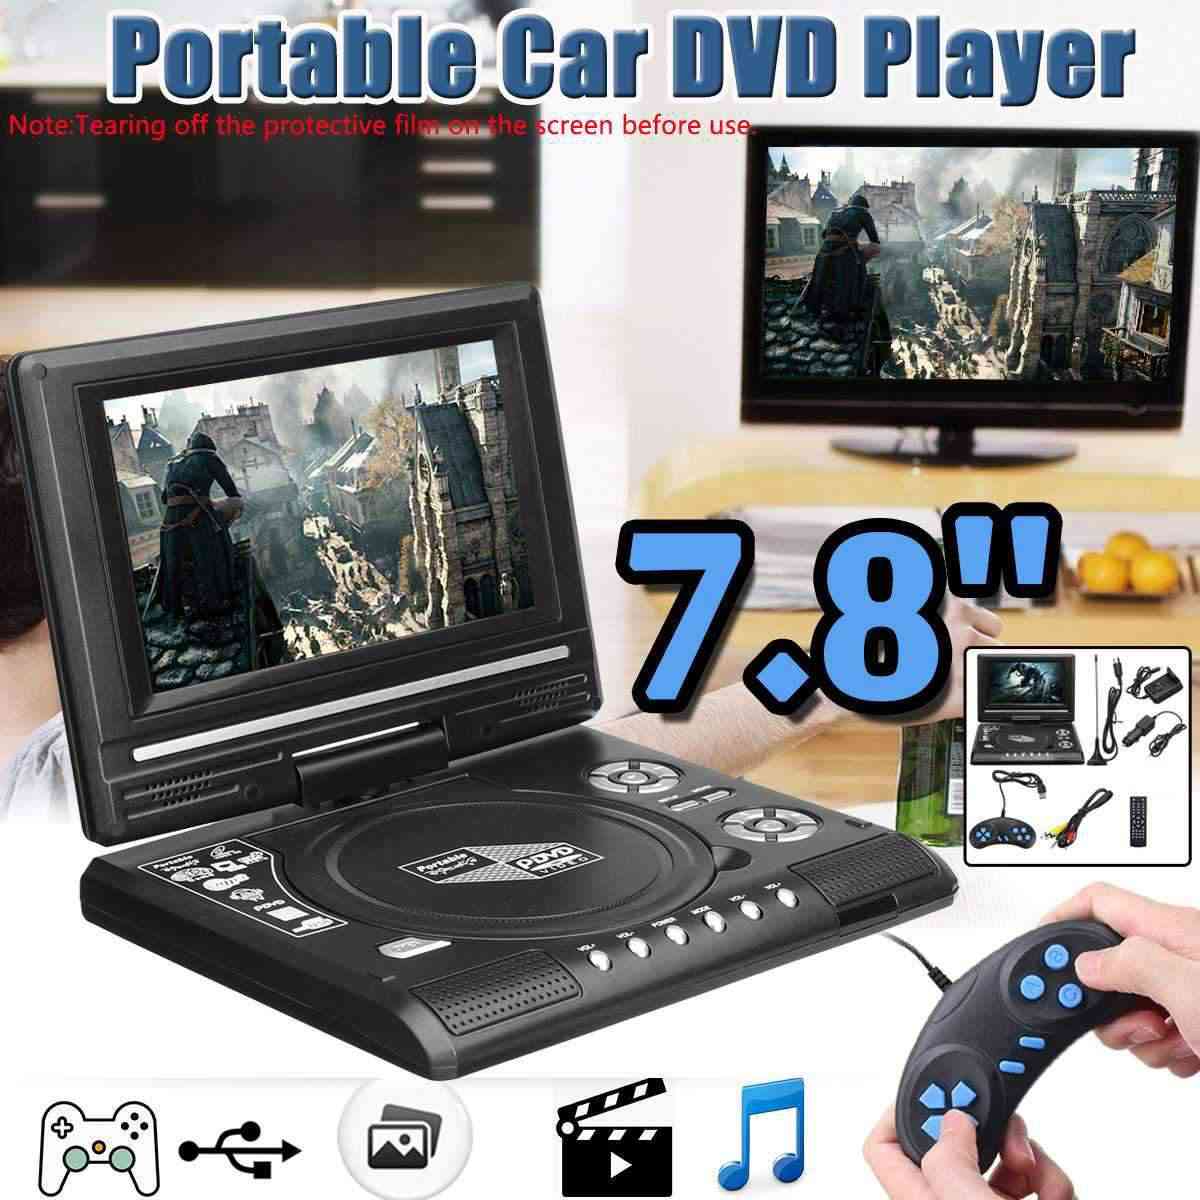 Lecteur DVD de voiture 7,8 pouces HD TV - VCD, CD, MP3, lecteur DVD Cartes USB SD Câble RCA TV Portatil -